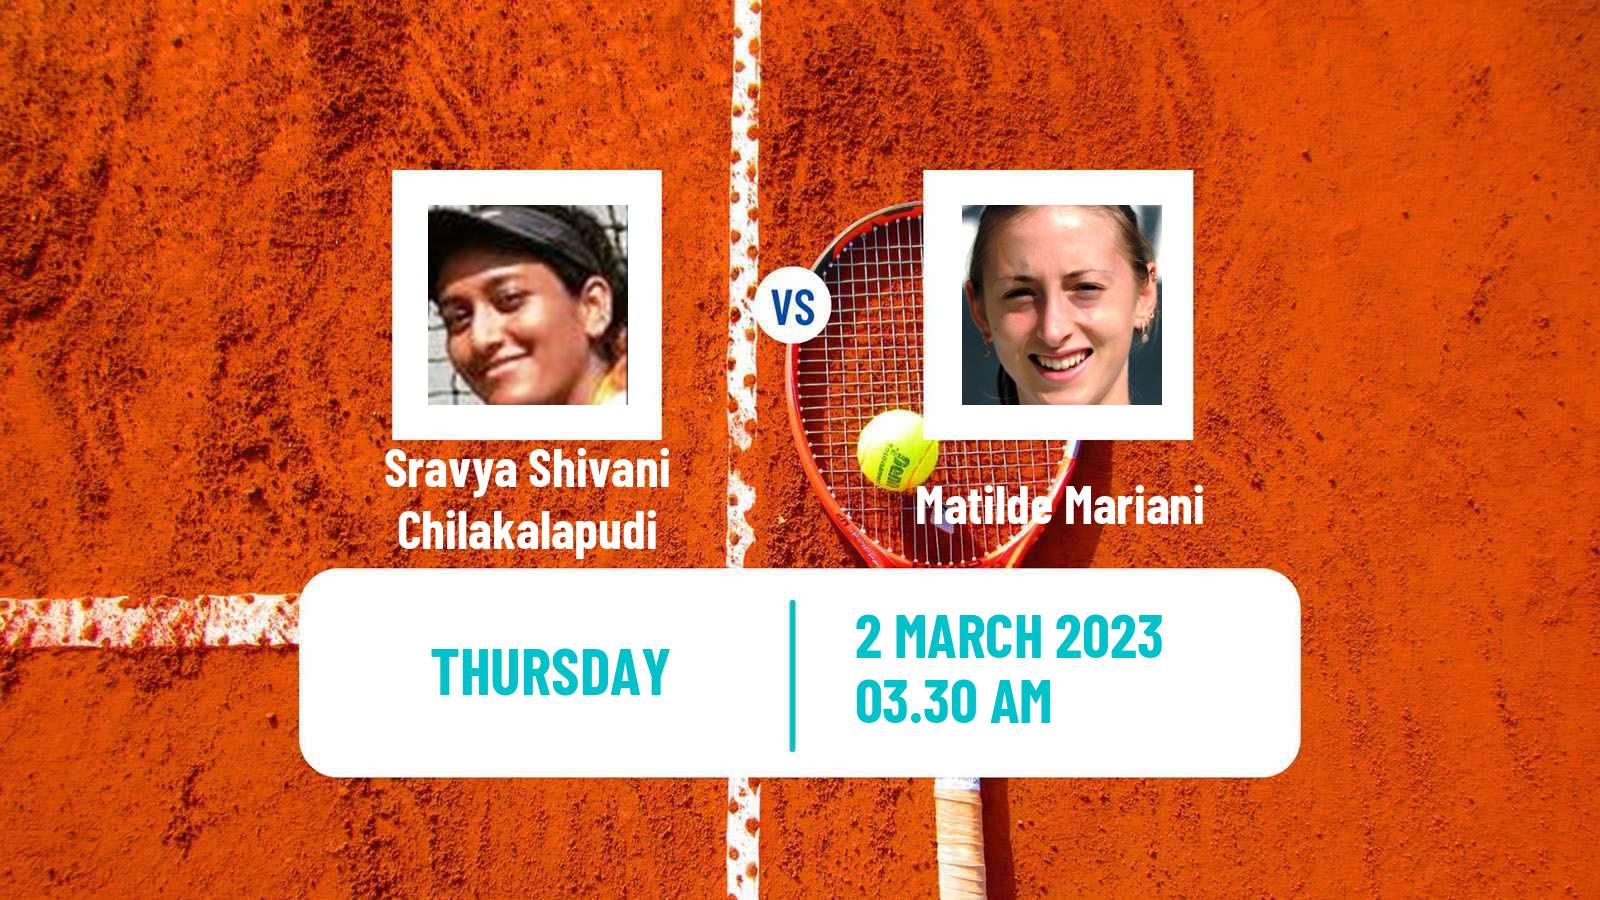 Tennis ITF Tournaments Sravya Shivani Chilakalapudi - Matilde Mariani